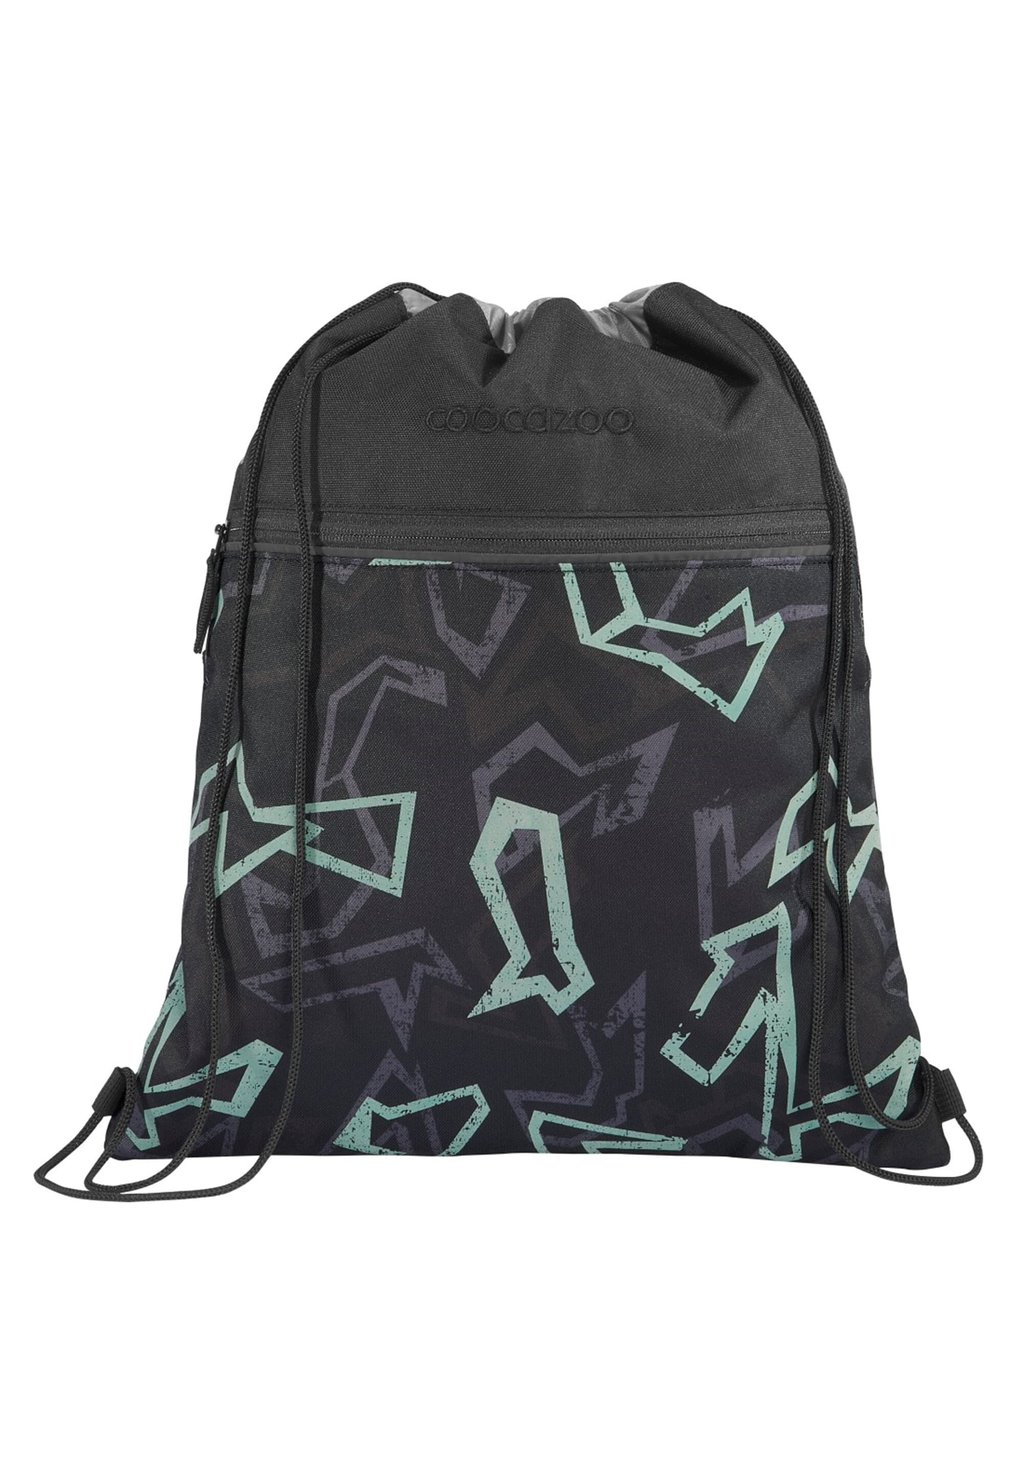 Спортивная сумка coocazoo, цвет reflective graffiti